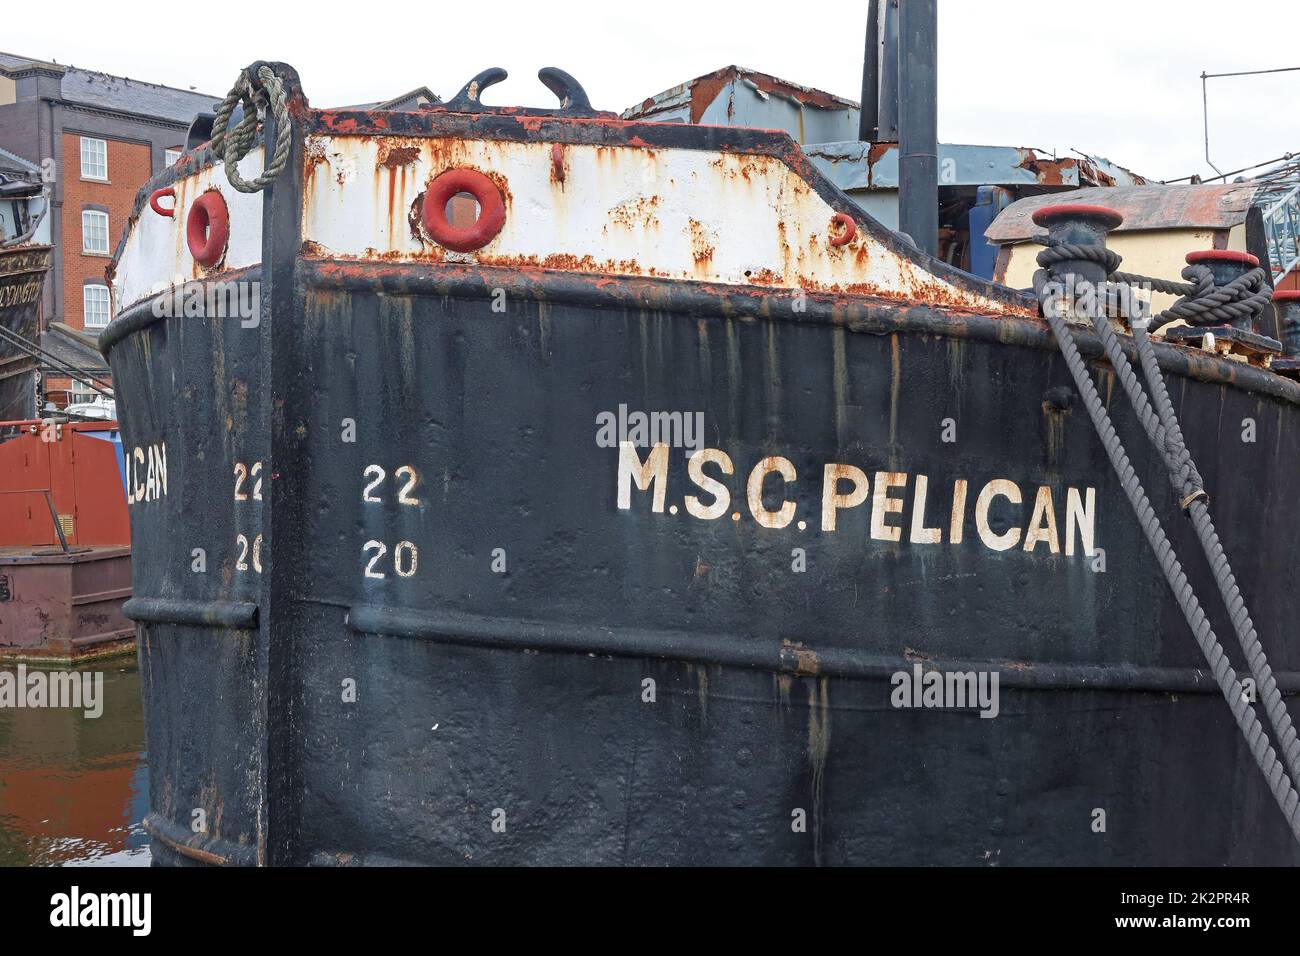 La barge MSC Pelican Manchester, 1956 ex-navire de Manchester bateau-grue canal, utilisé pour les magasins et l'appel d'offres bouy, a été retirée 1980 Banque D'Images